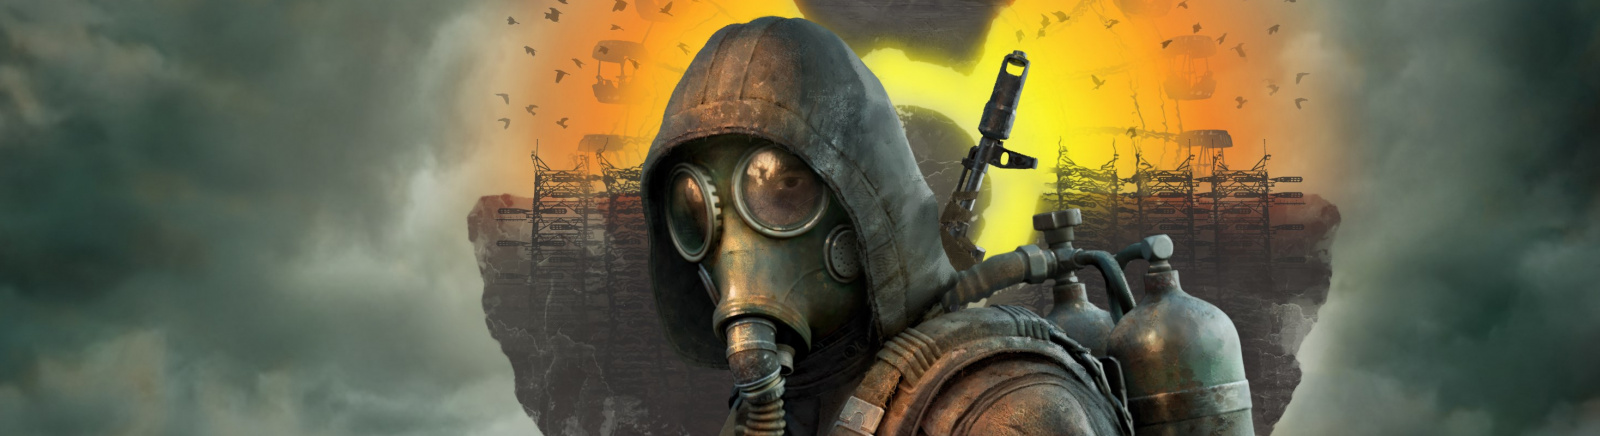 Дата выхода S.T.A.L.K.E.R. 2: Heart of Chernobyl (Сталкер 2)  на PC и Xbox Series X в России и во всем мире